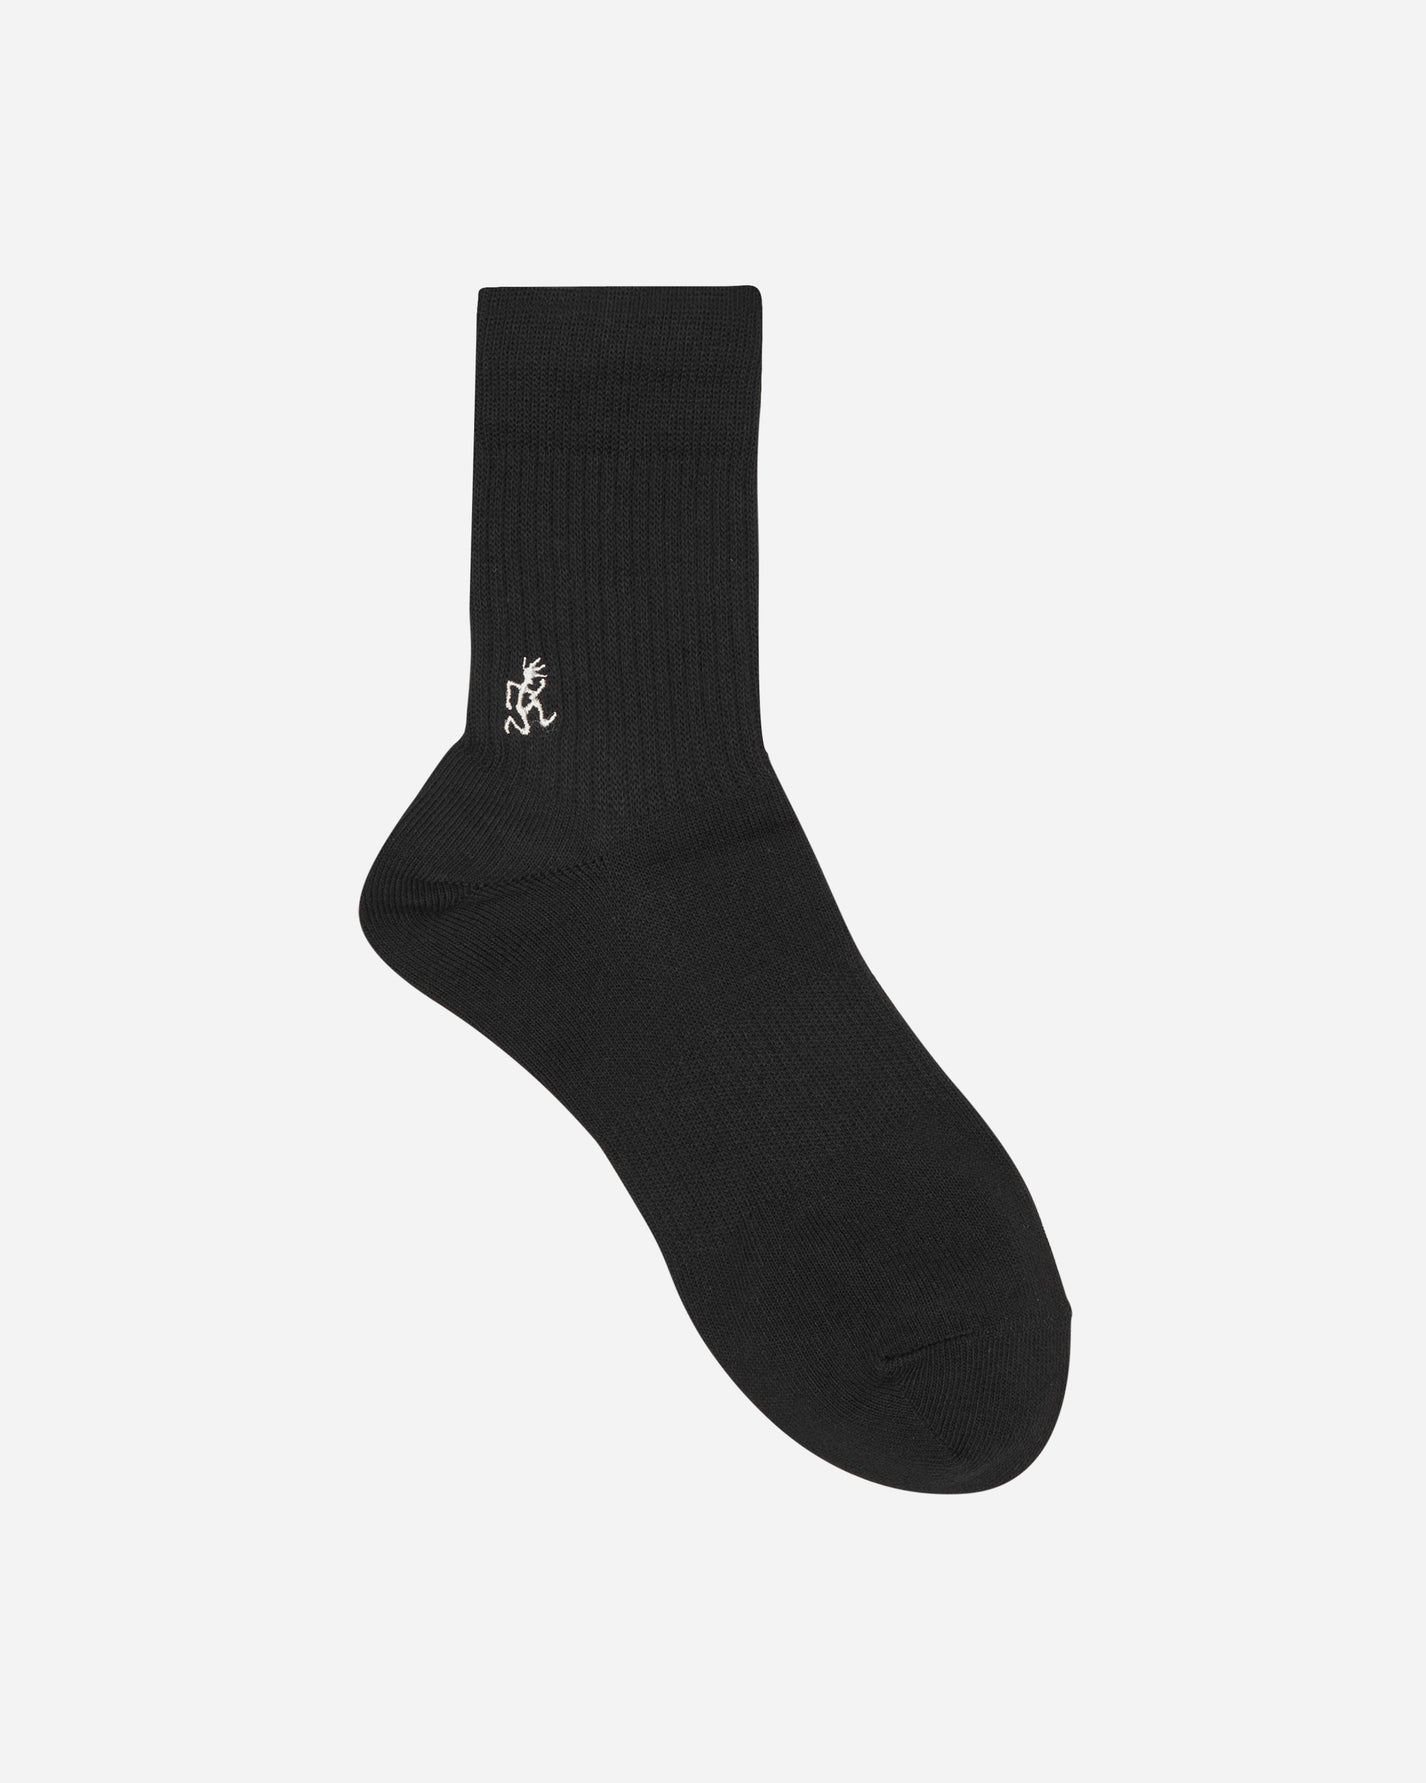 Gramicci Basic Crew Socks B Underwear Socks SX-M04 B